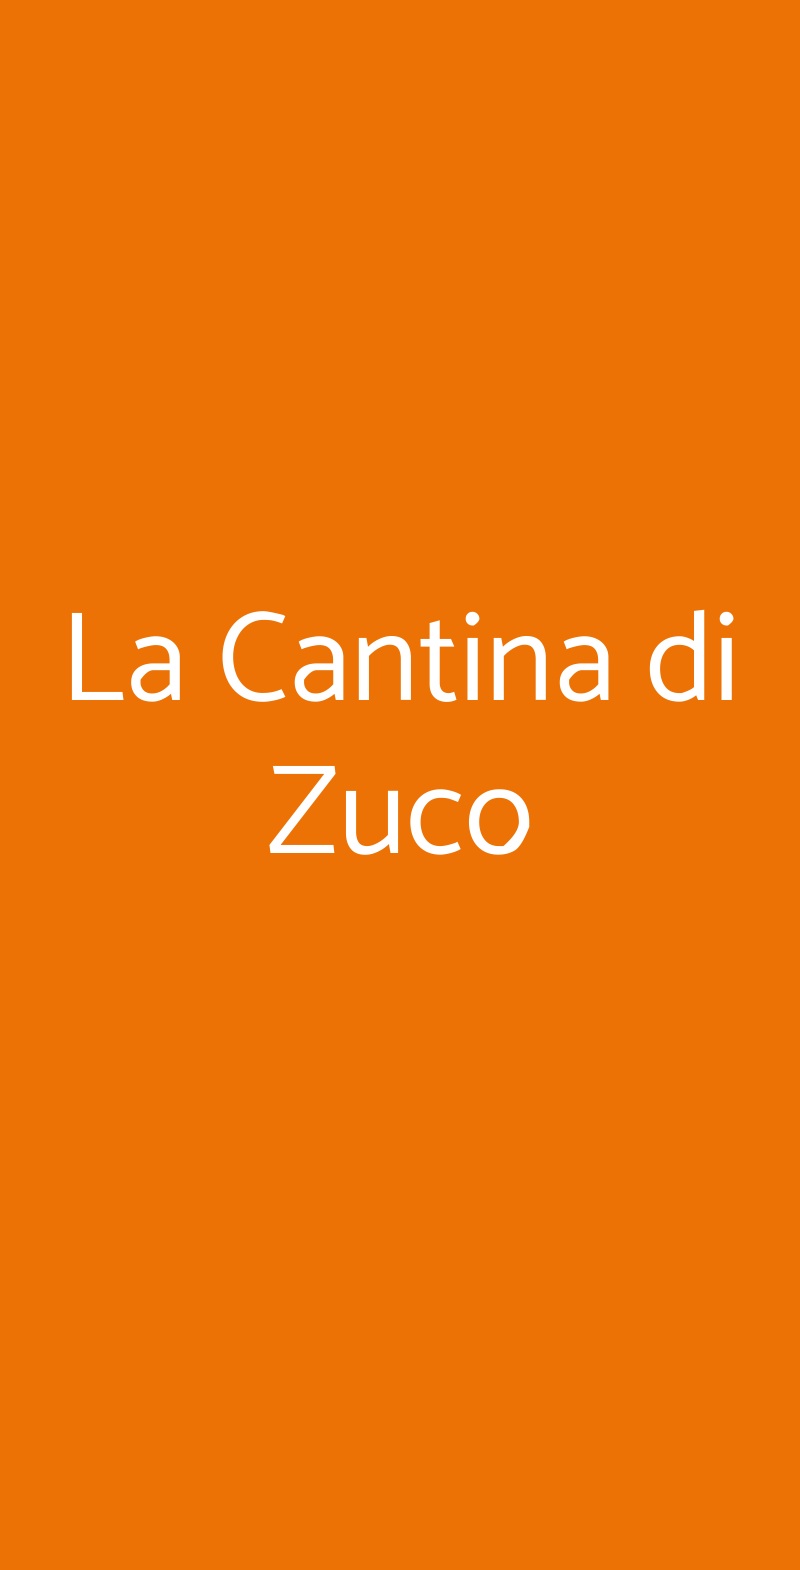 La Cantina di Zuco Motta San Giovanni menù 1 pagina